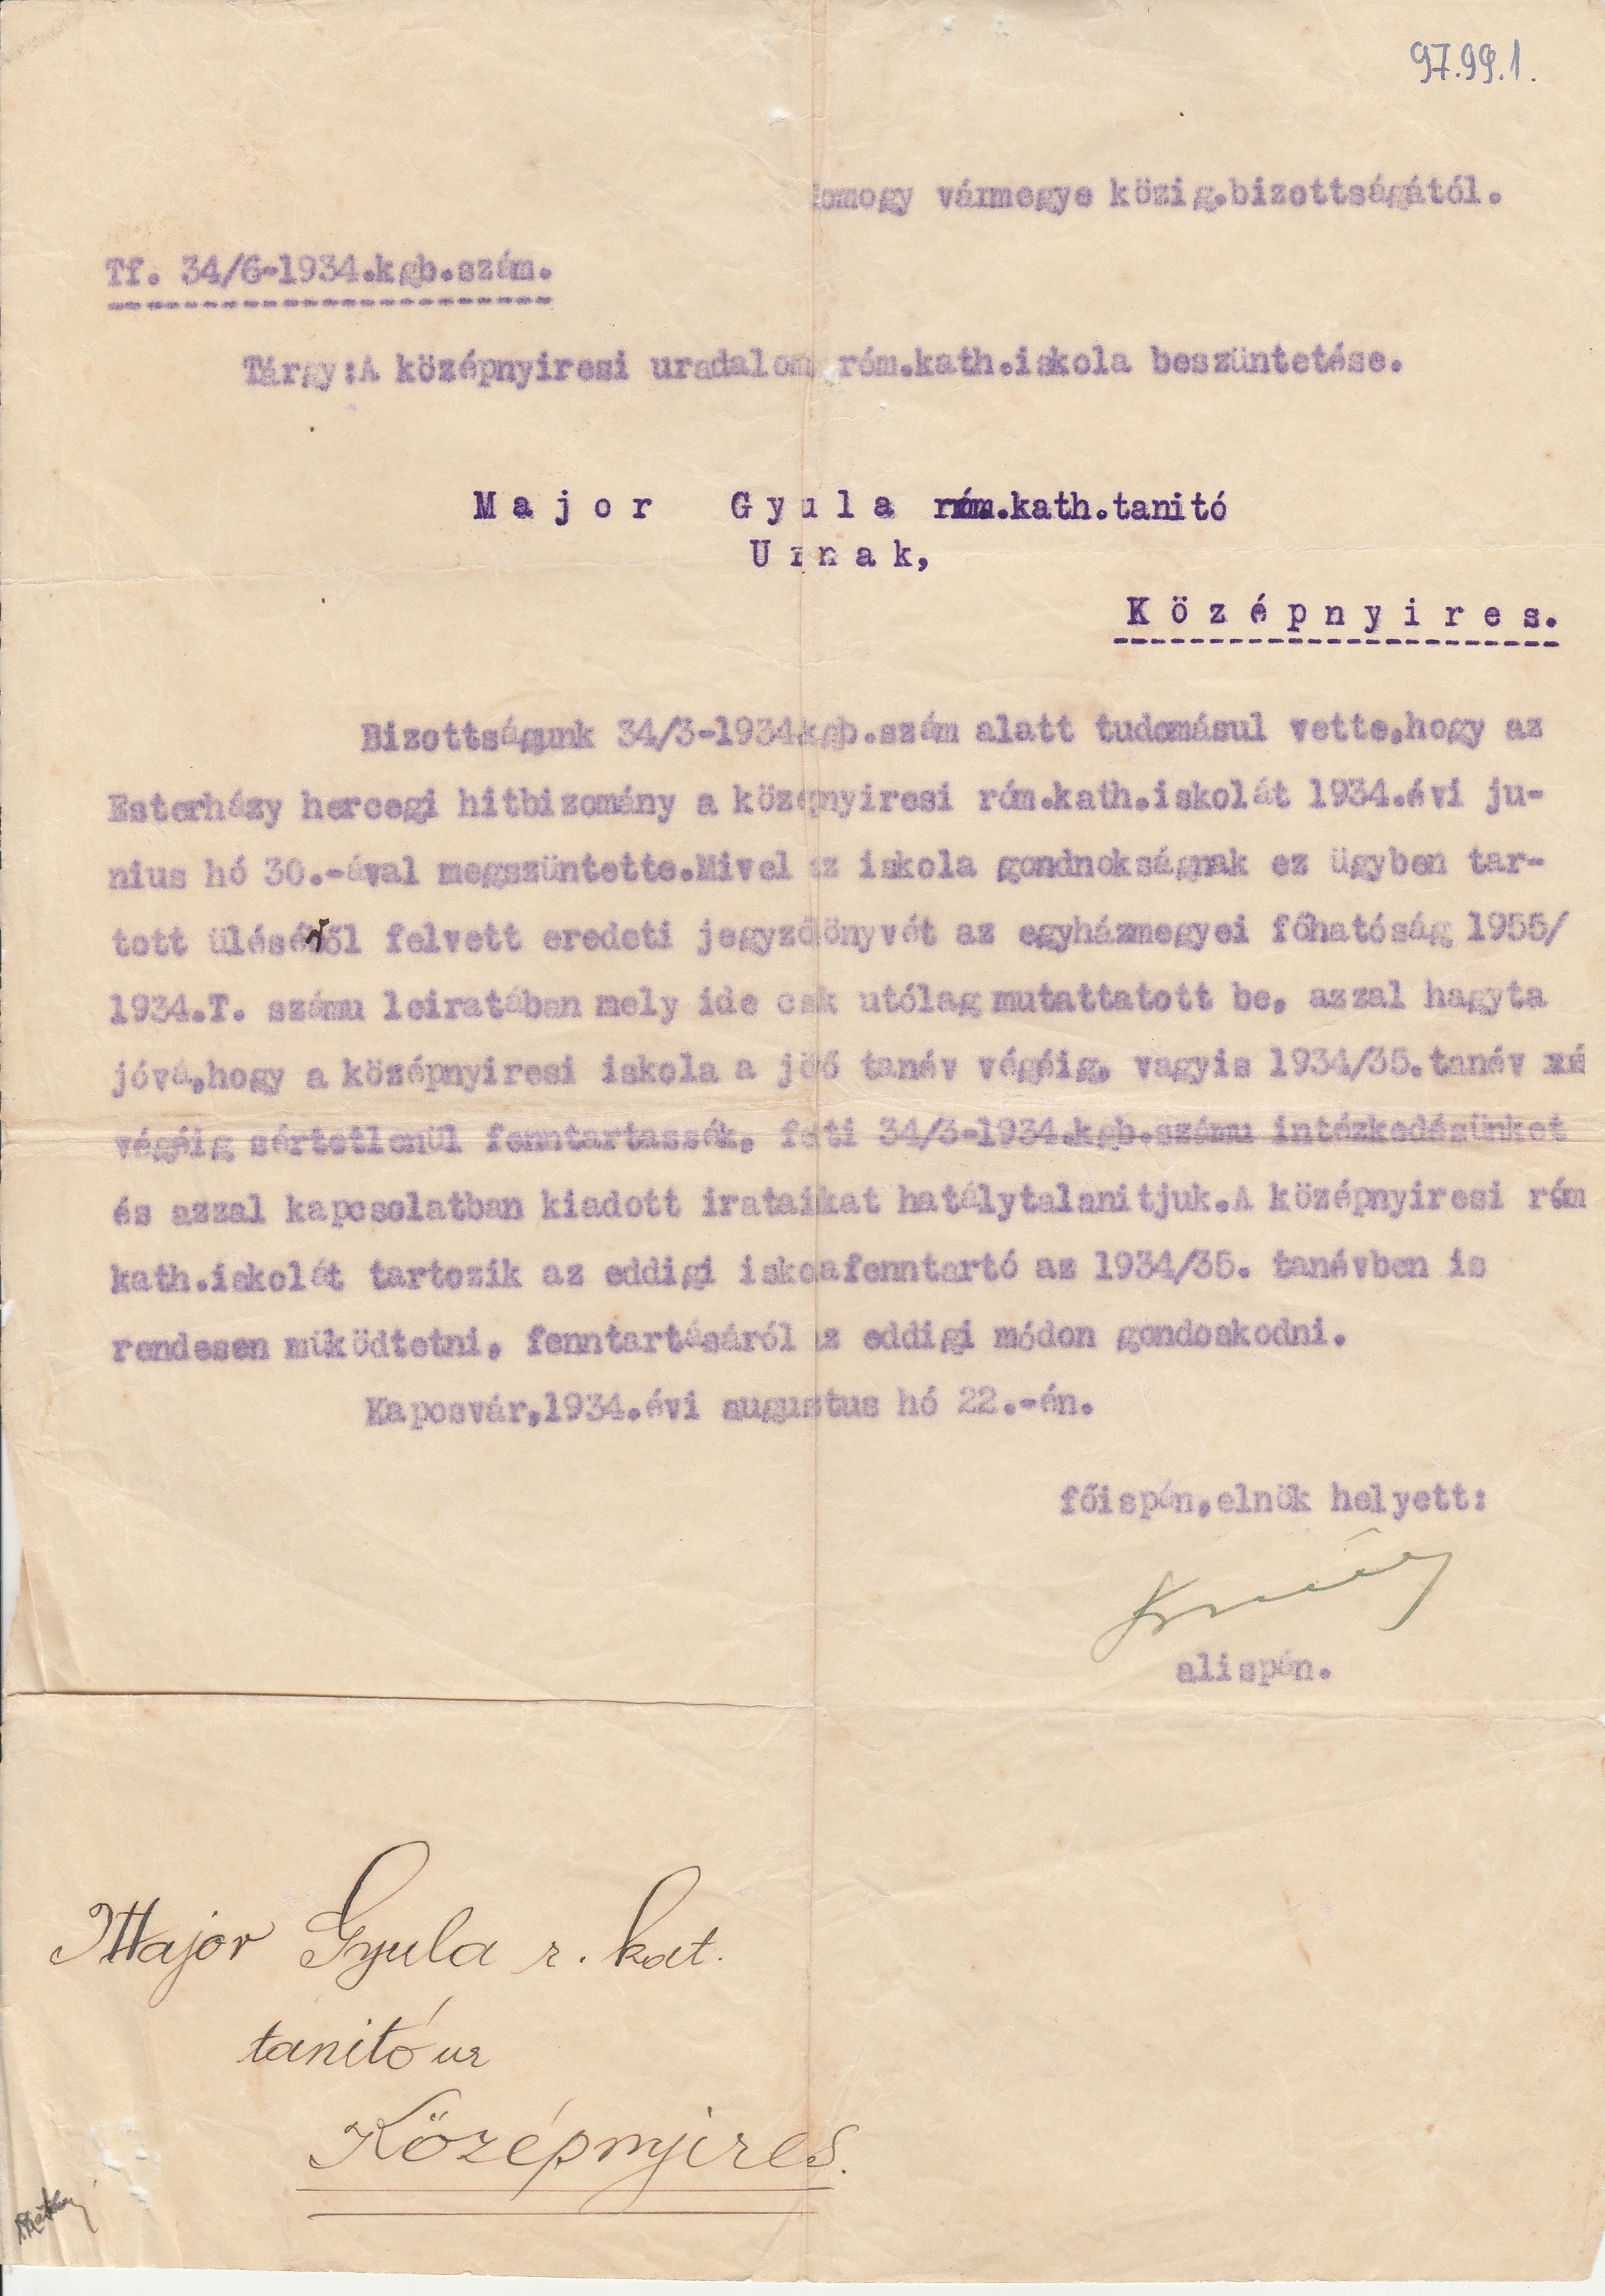 Mezőcsokonya - Középnyíres r.k. iskolájának megszüntetésével kapcsolatos intézkedés (Tapolcai Városi Múzeum CC BY-NC-SA)